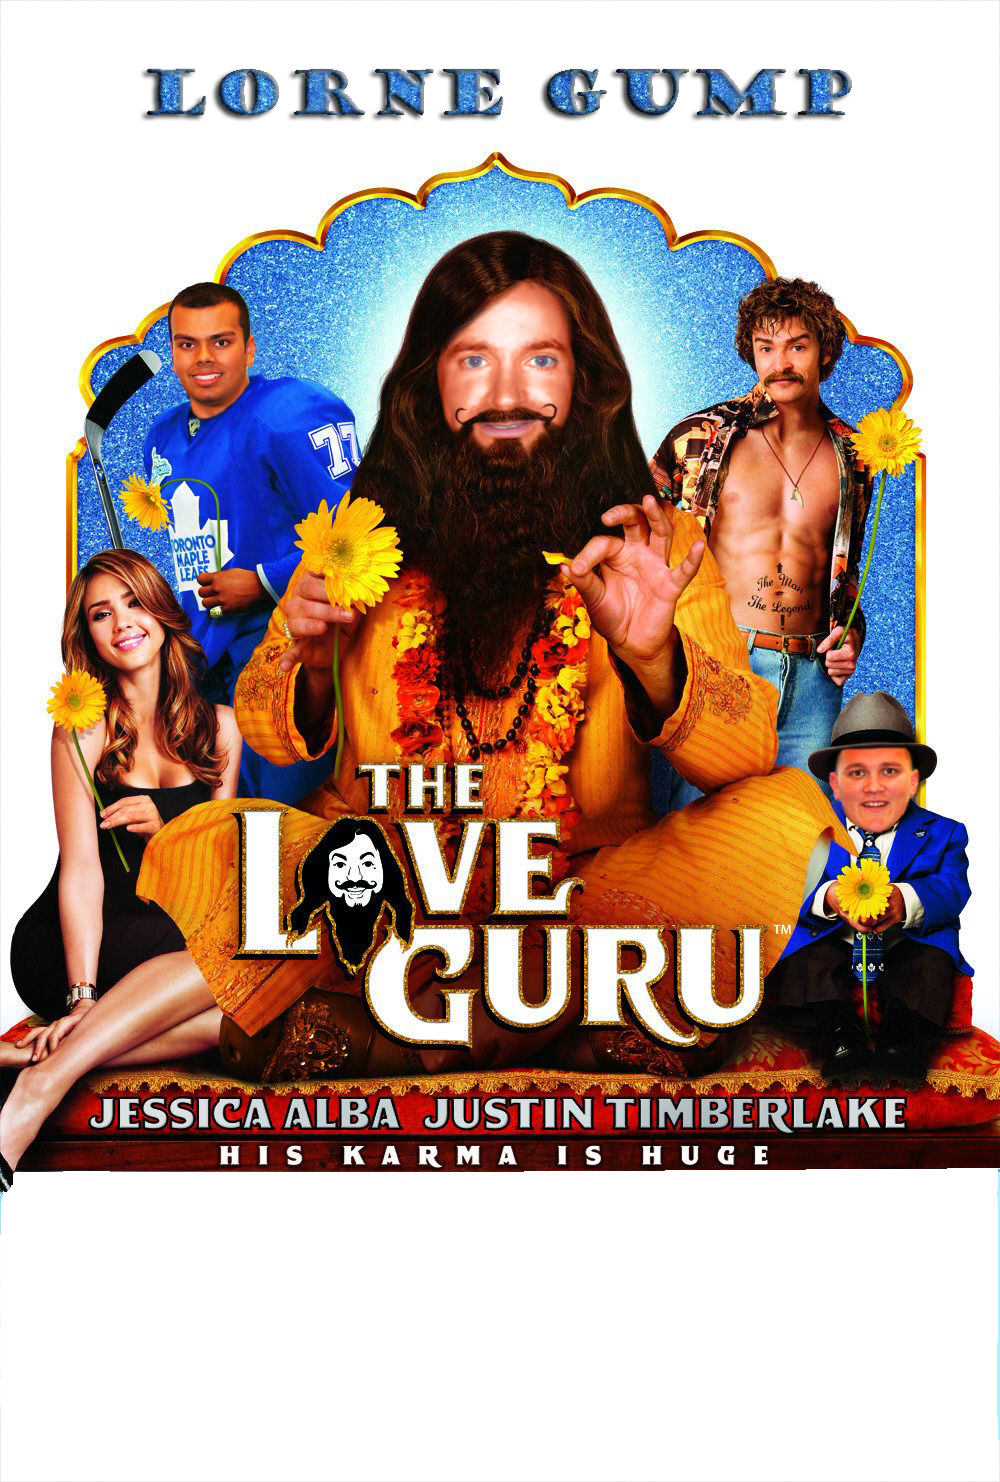 Lorne Gump in Love Guru